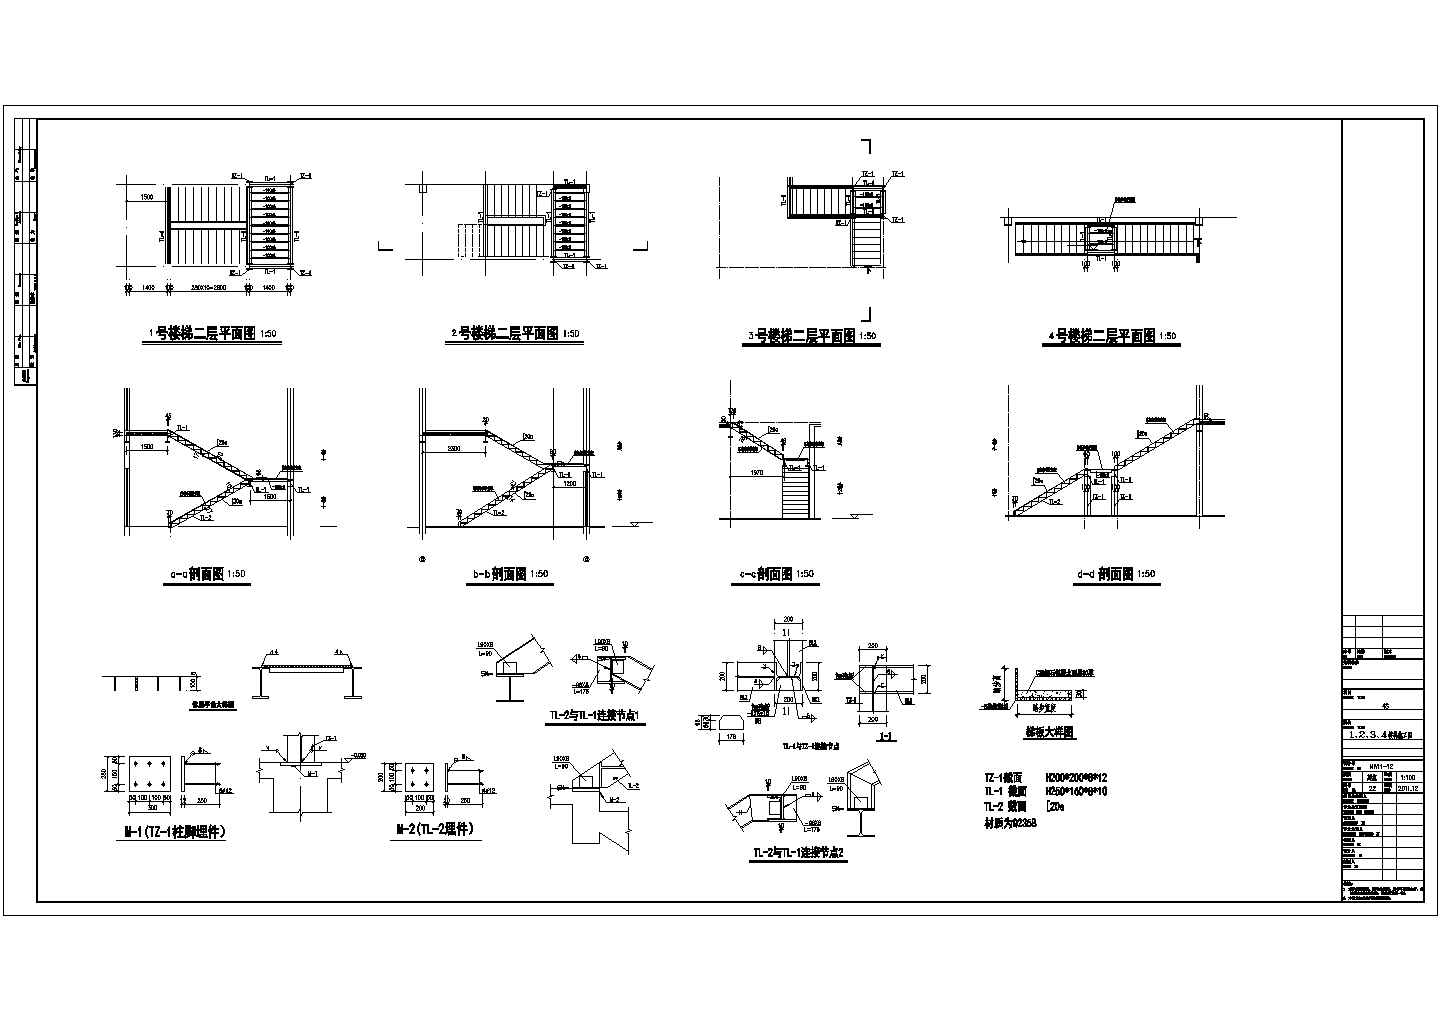 4S店钢框架结构钢楼梯节点构造详图